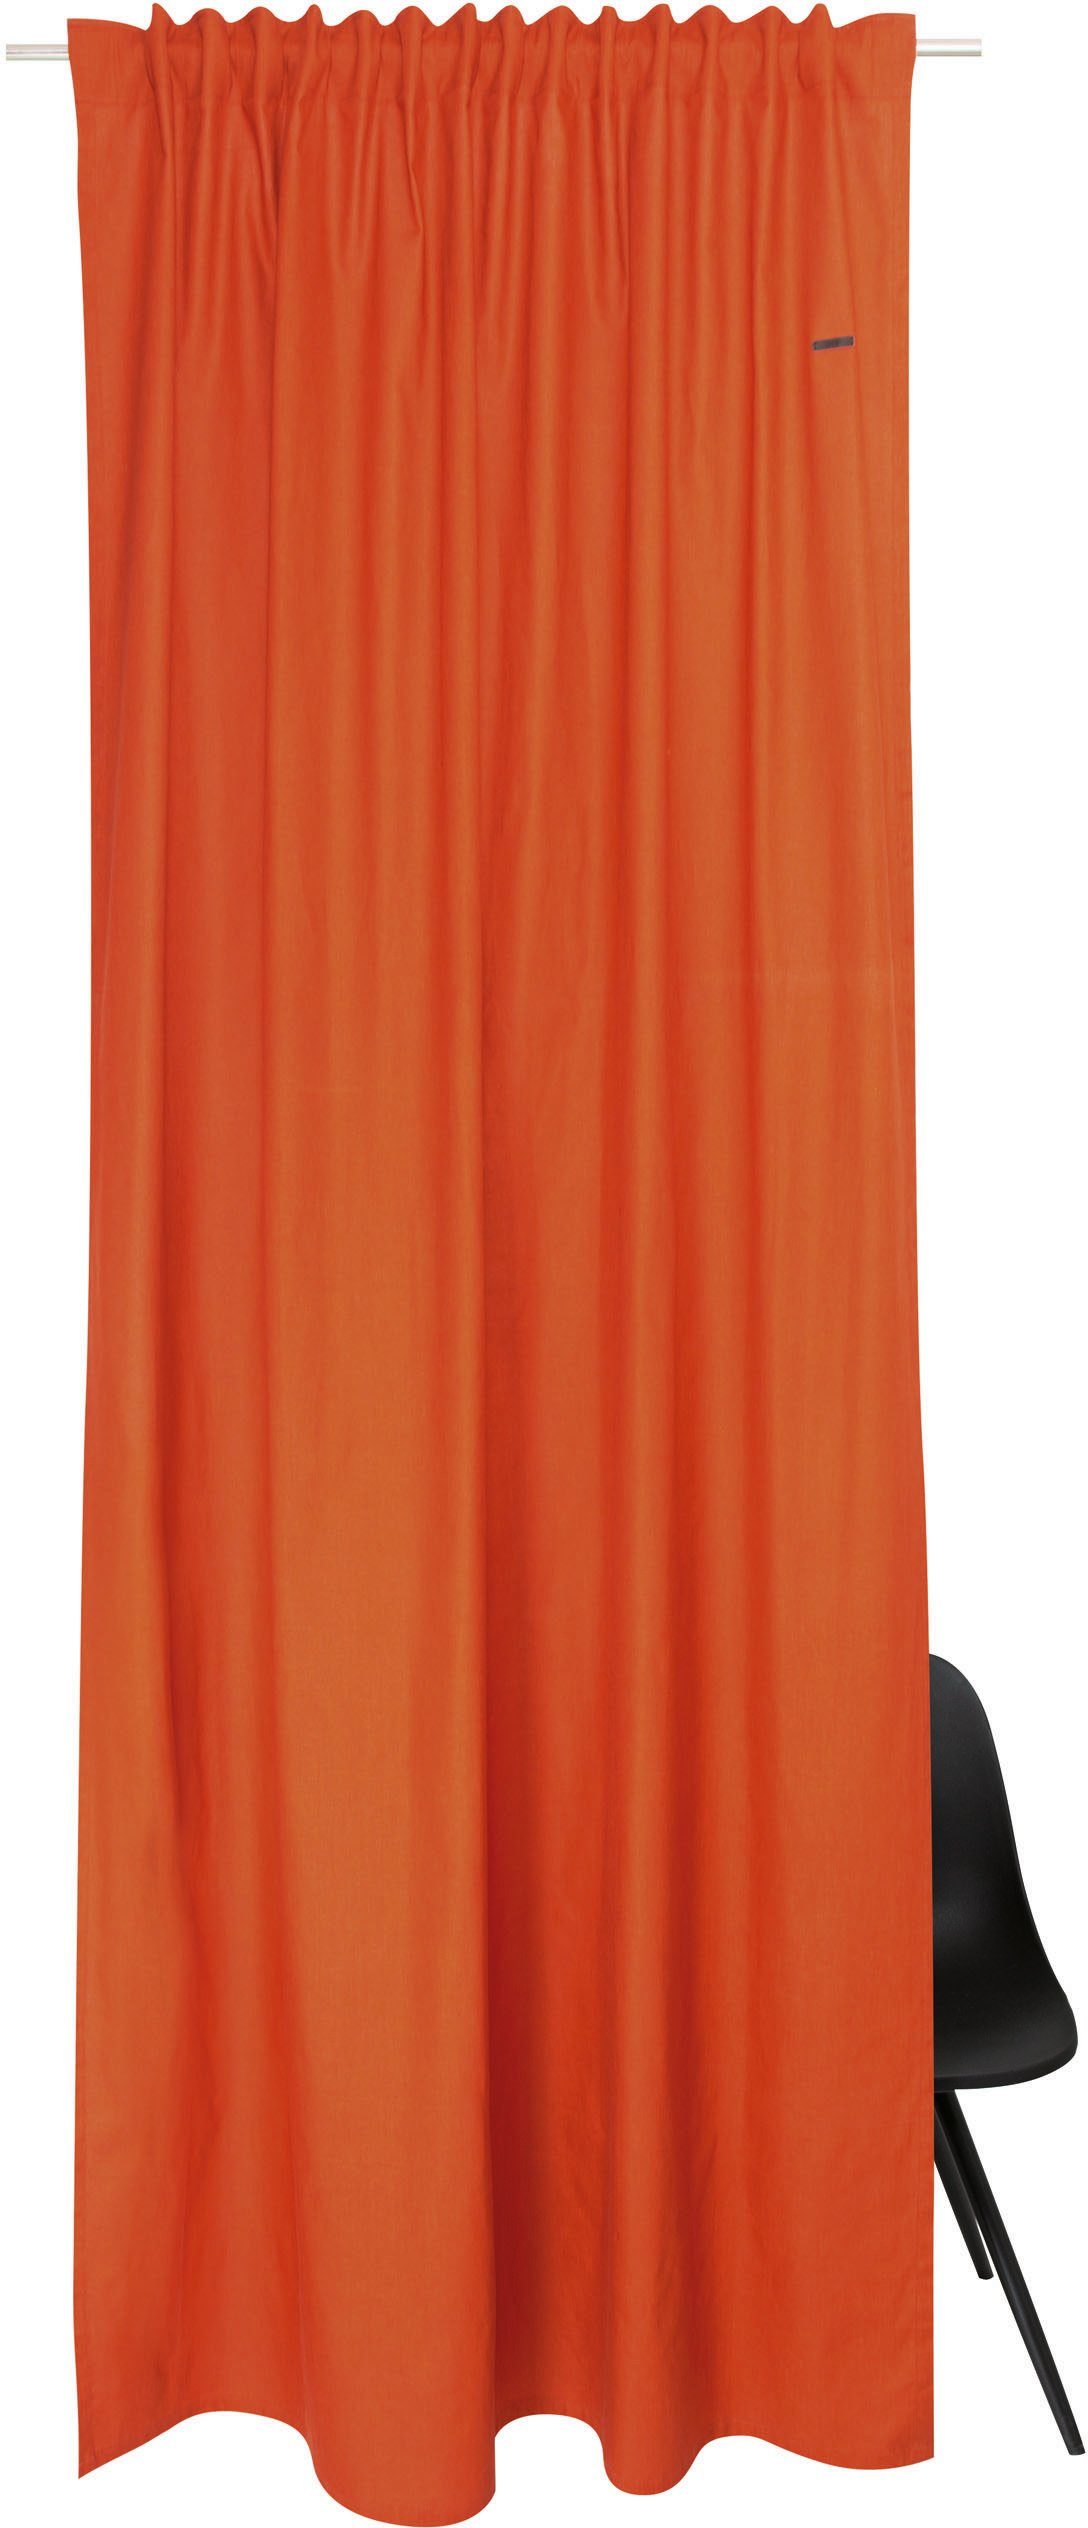 Vorhang Neo, Esprit, verdeckte Schlaufen (1 St), blickdicht, aus nachhaltiger Baumwolle, blickdicht bronzefarben/zimt/orange